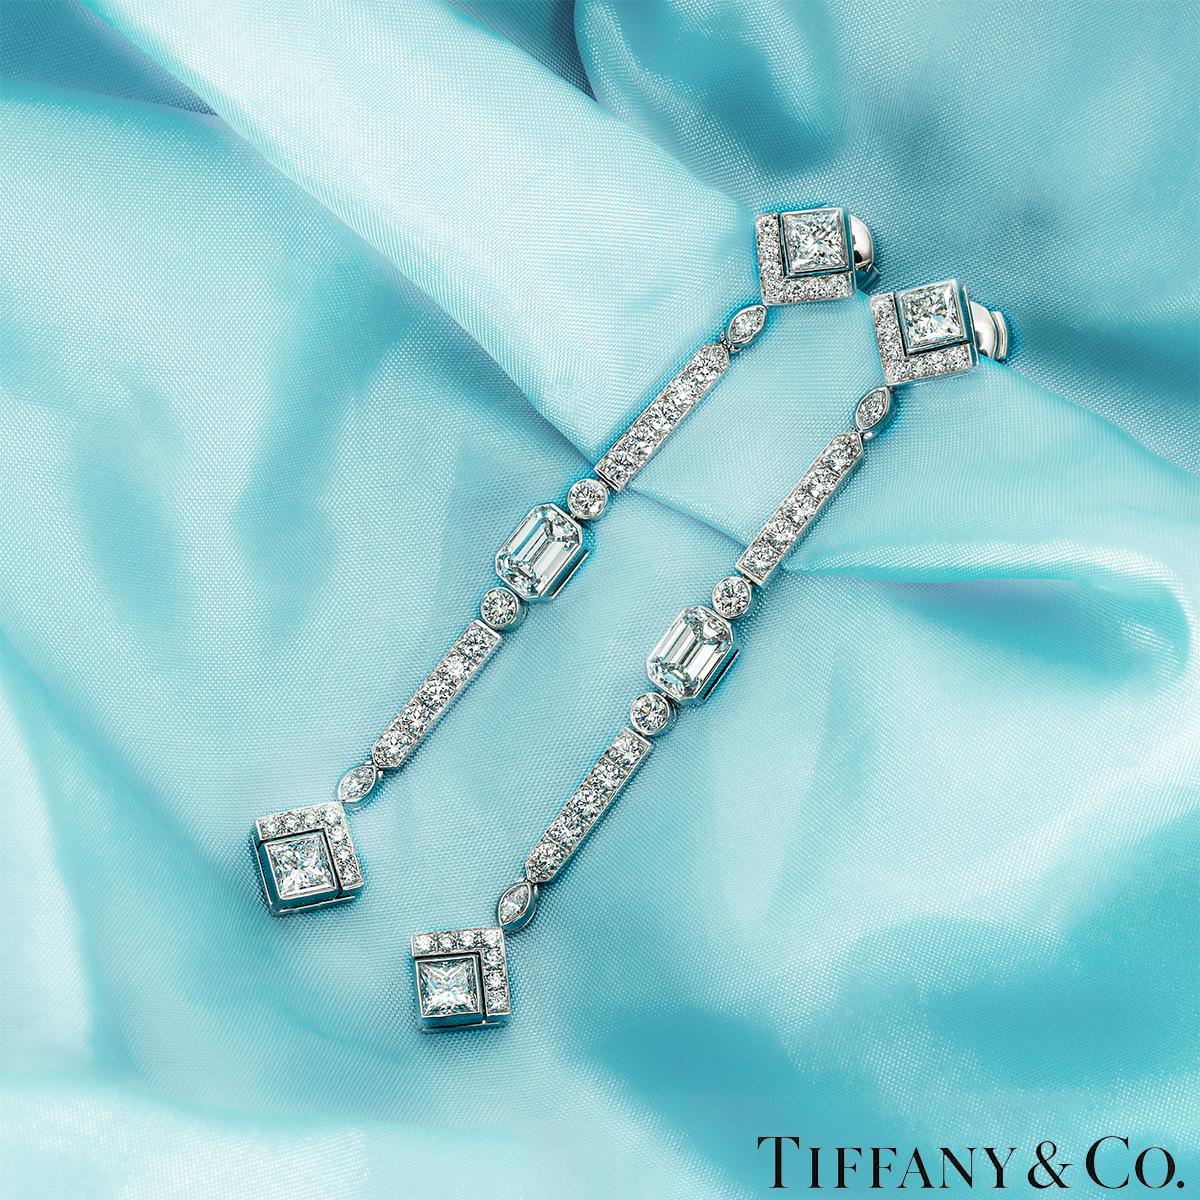 Ein maßgeschneidertes Paar Platin-Diamanttropfenohrringe von Tiffany & Co. Beide Ohrringe beginnen mit einem quadratisch geschliffenen Diamanten, der unten von 7 runden Diamanten im Brillantschliff umrahmt wird, gefolgt von einem in der Zarge